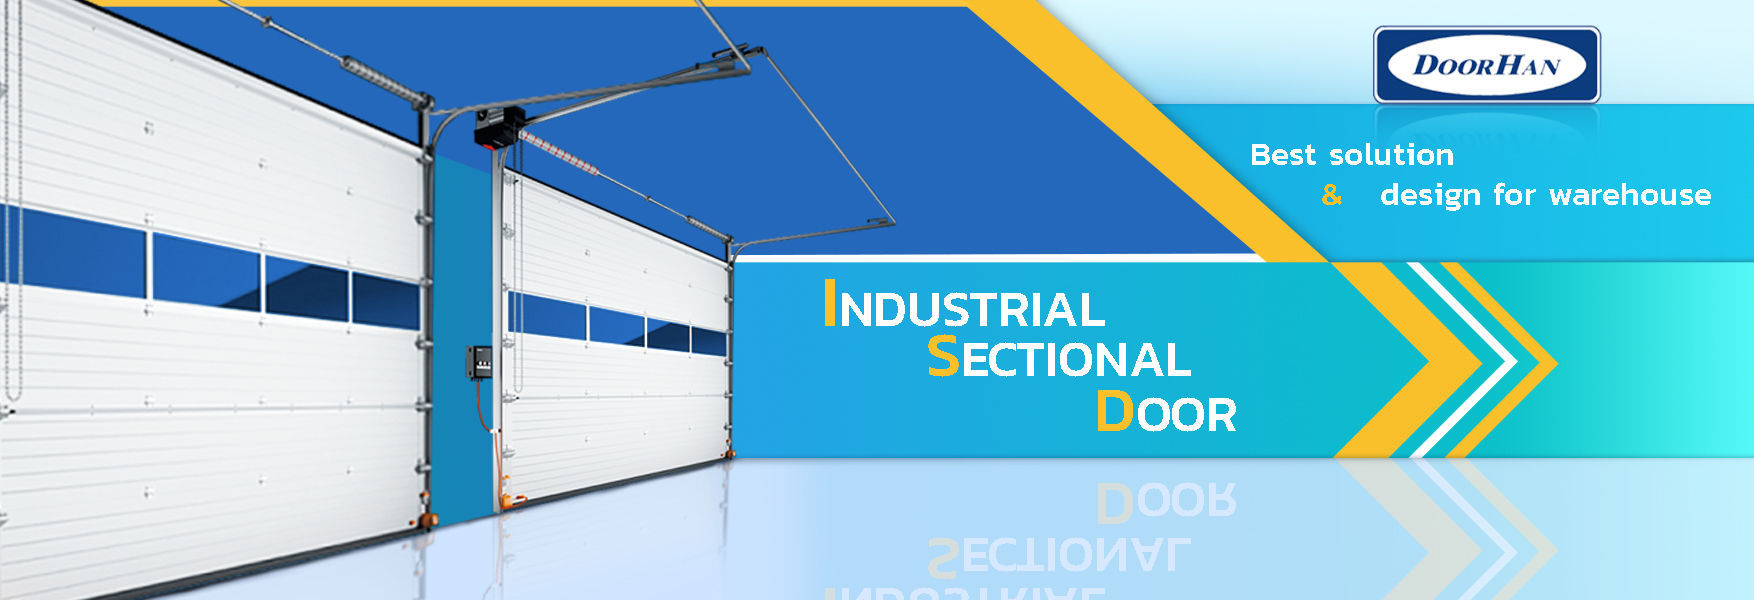 DoorHan,Best solution &  design for warehouse,Dock system